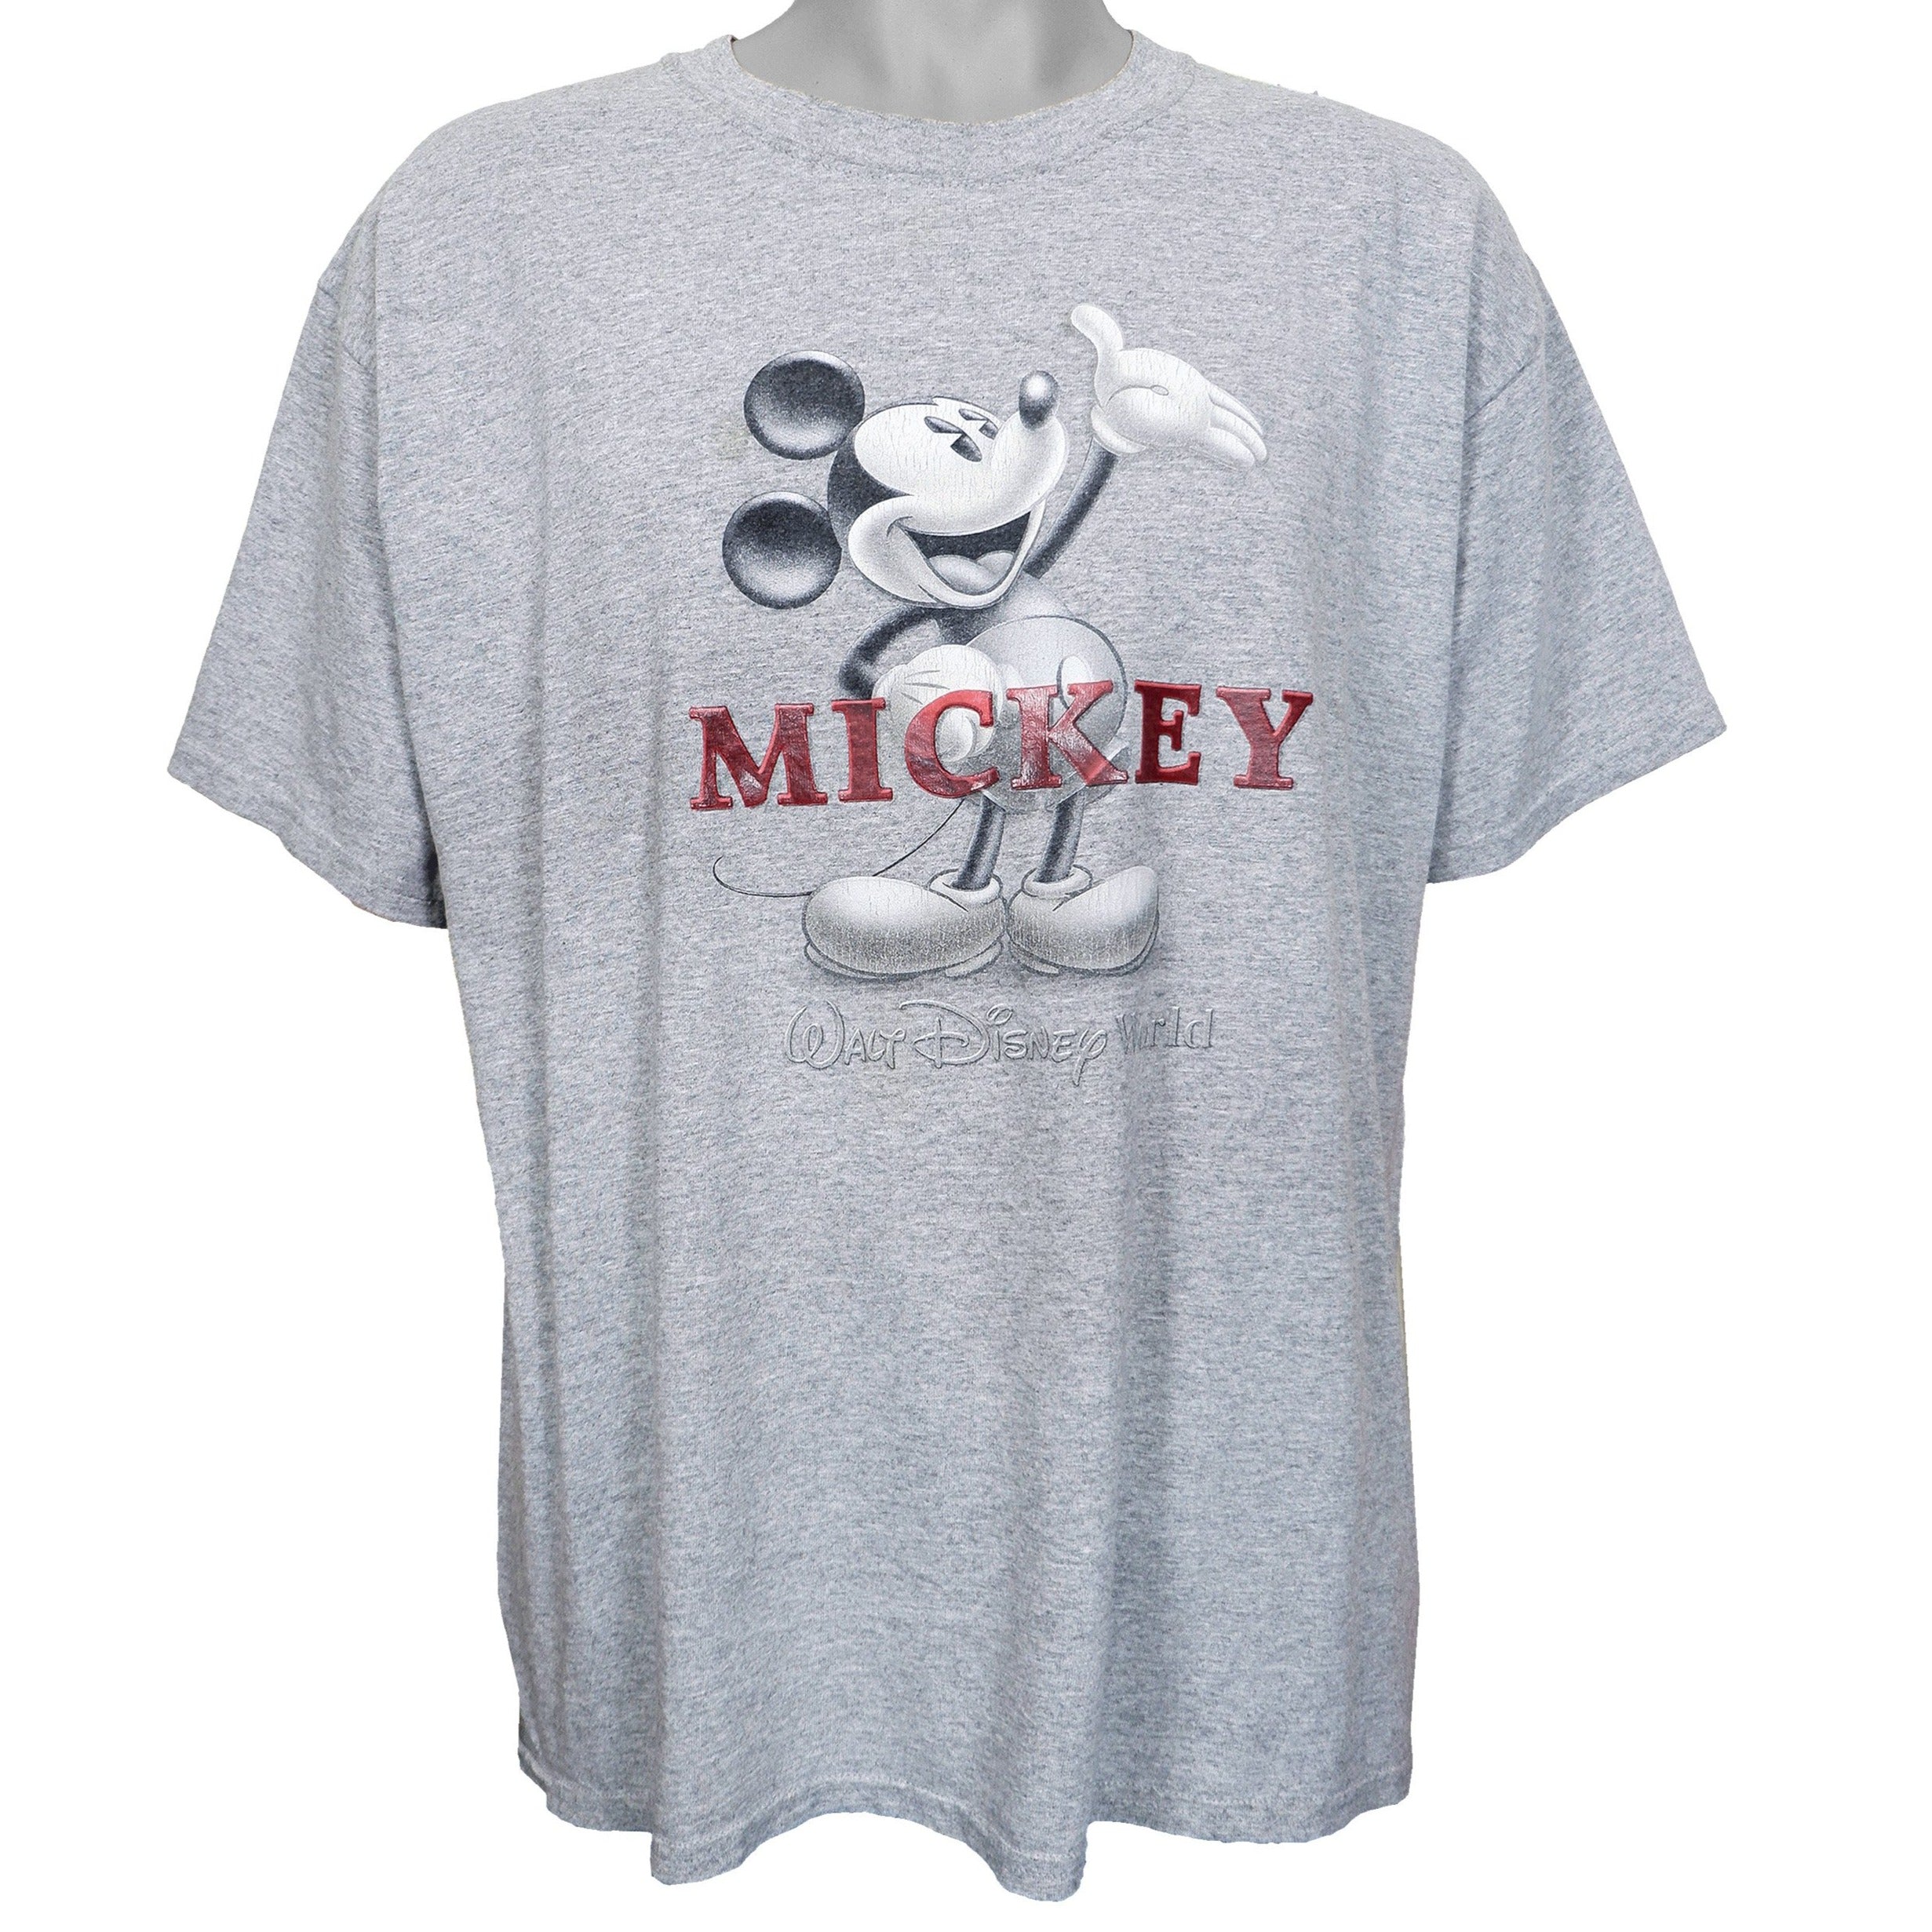 NBA Basketball Los Angeles Lakers Cheerful Mickey Disney Shirt